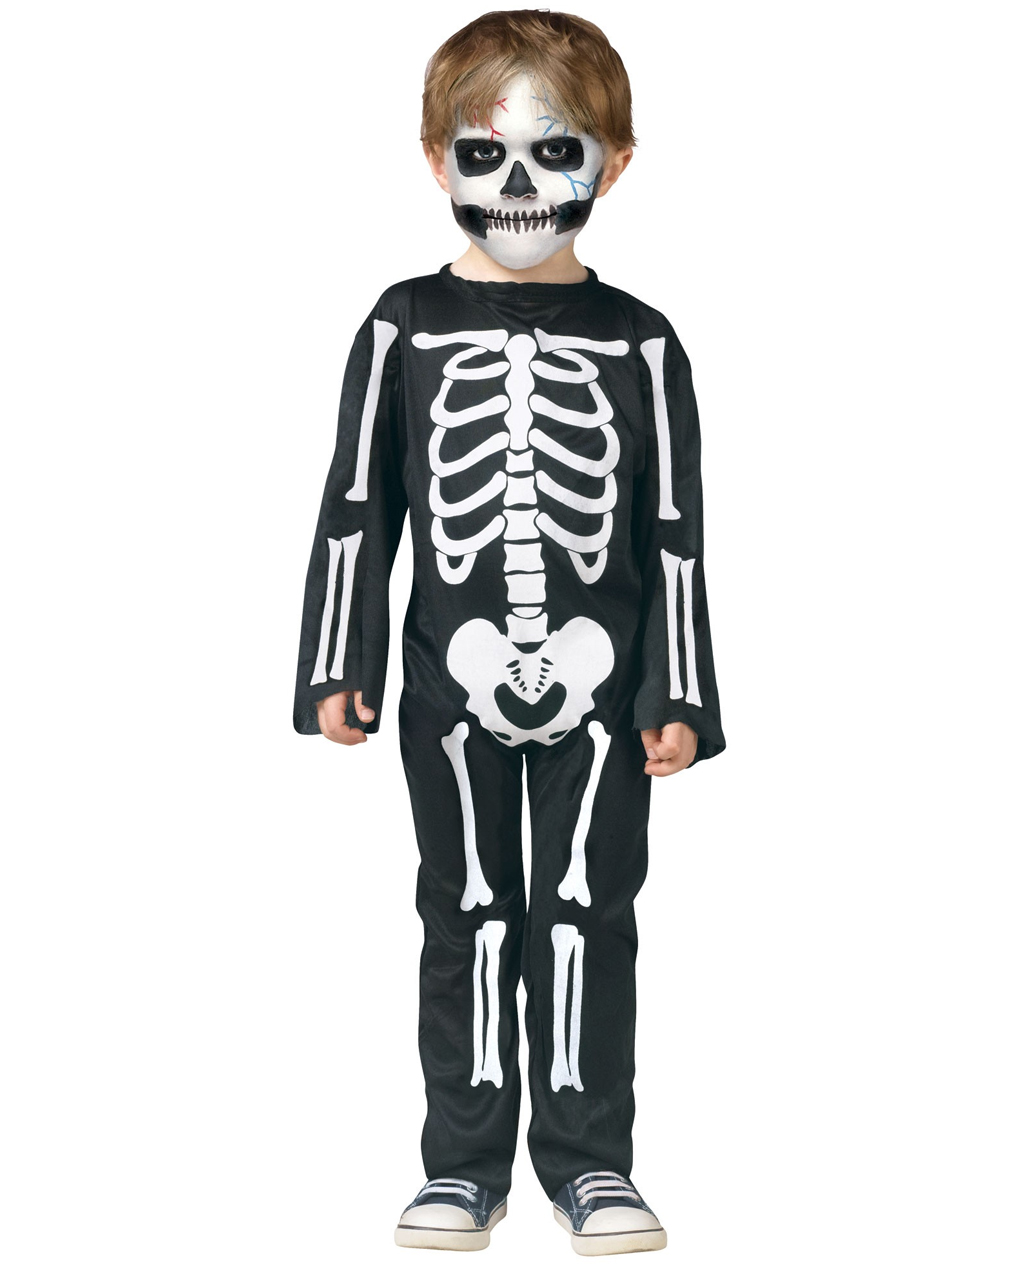 Skelett Kostüm für Kinder Jungen schwarz-weiß Halloween Karneval Fasching 008870